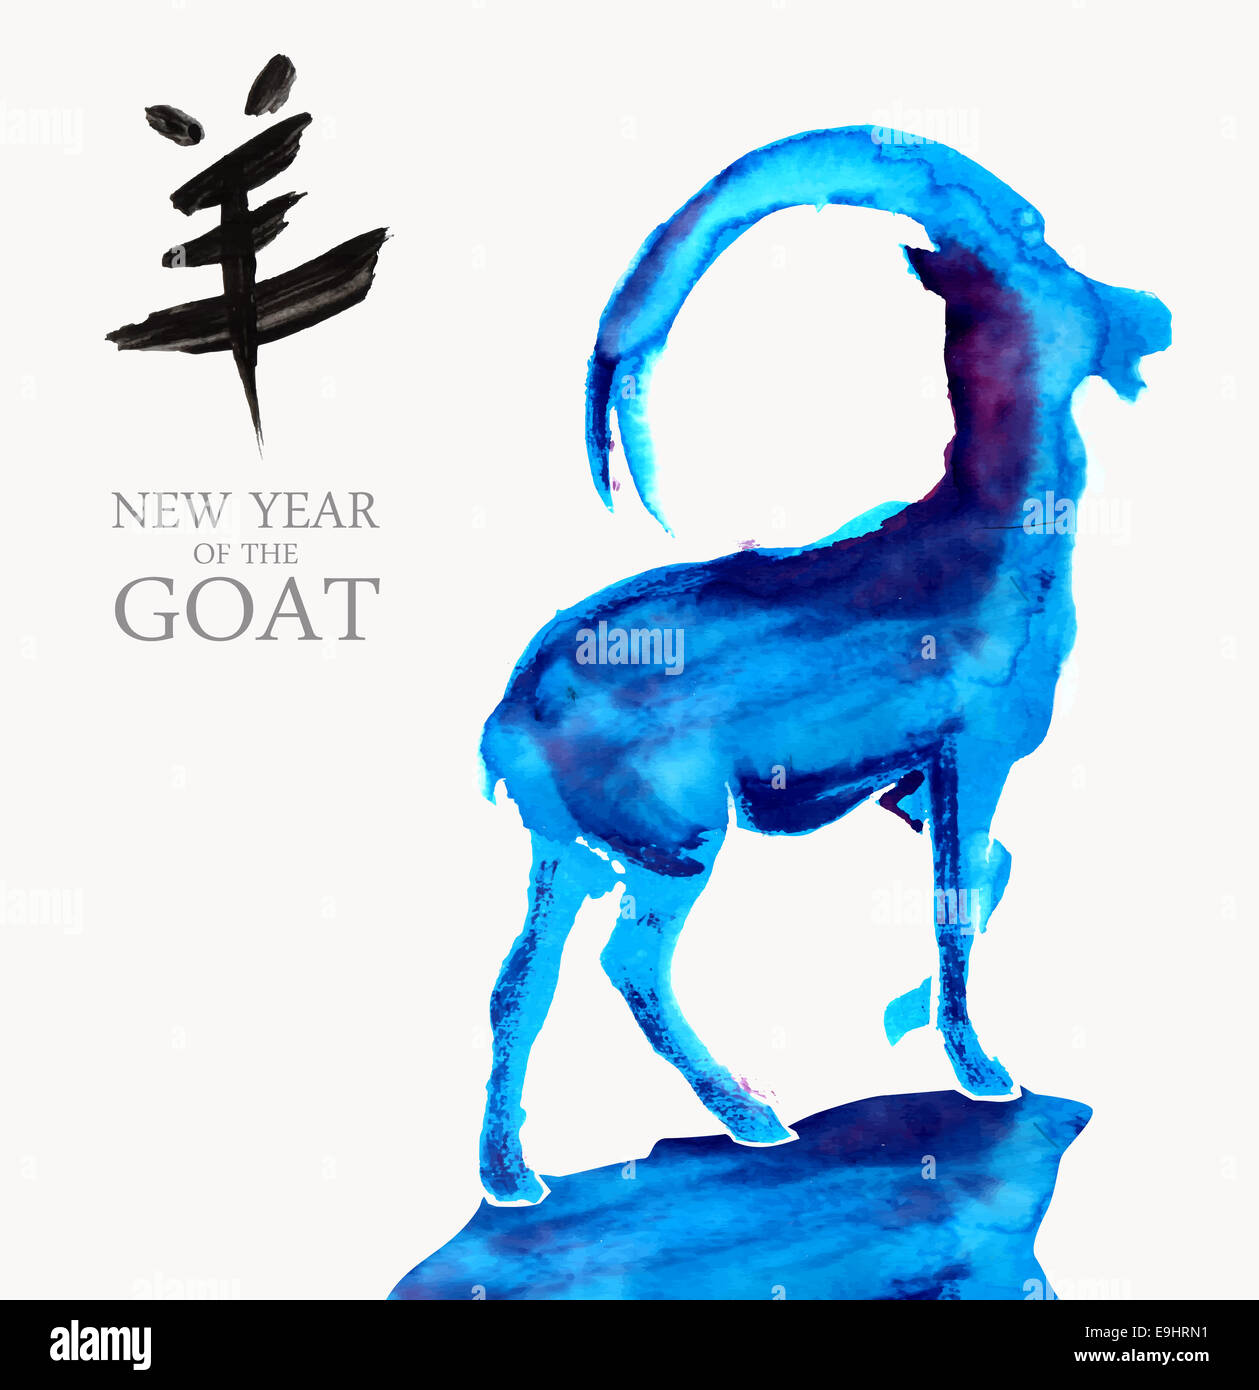 Frohes neues Jahr der Ziege 2015 Grußkarte. Aquarell Schafe Form Abbildung. EPS10 Vektor-Datei in Layer organisiert Stockfoto